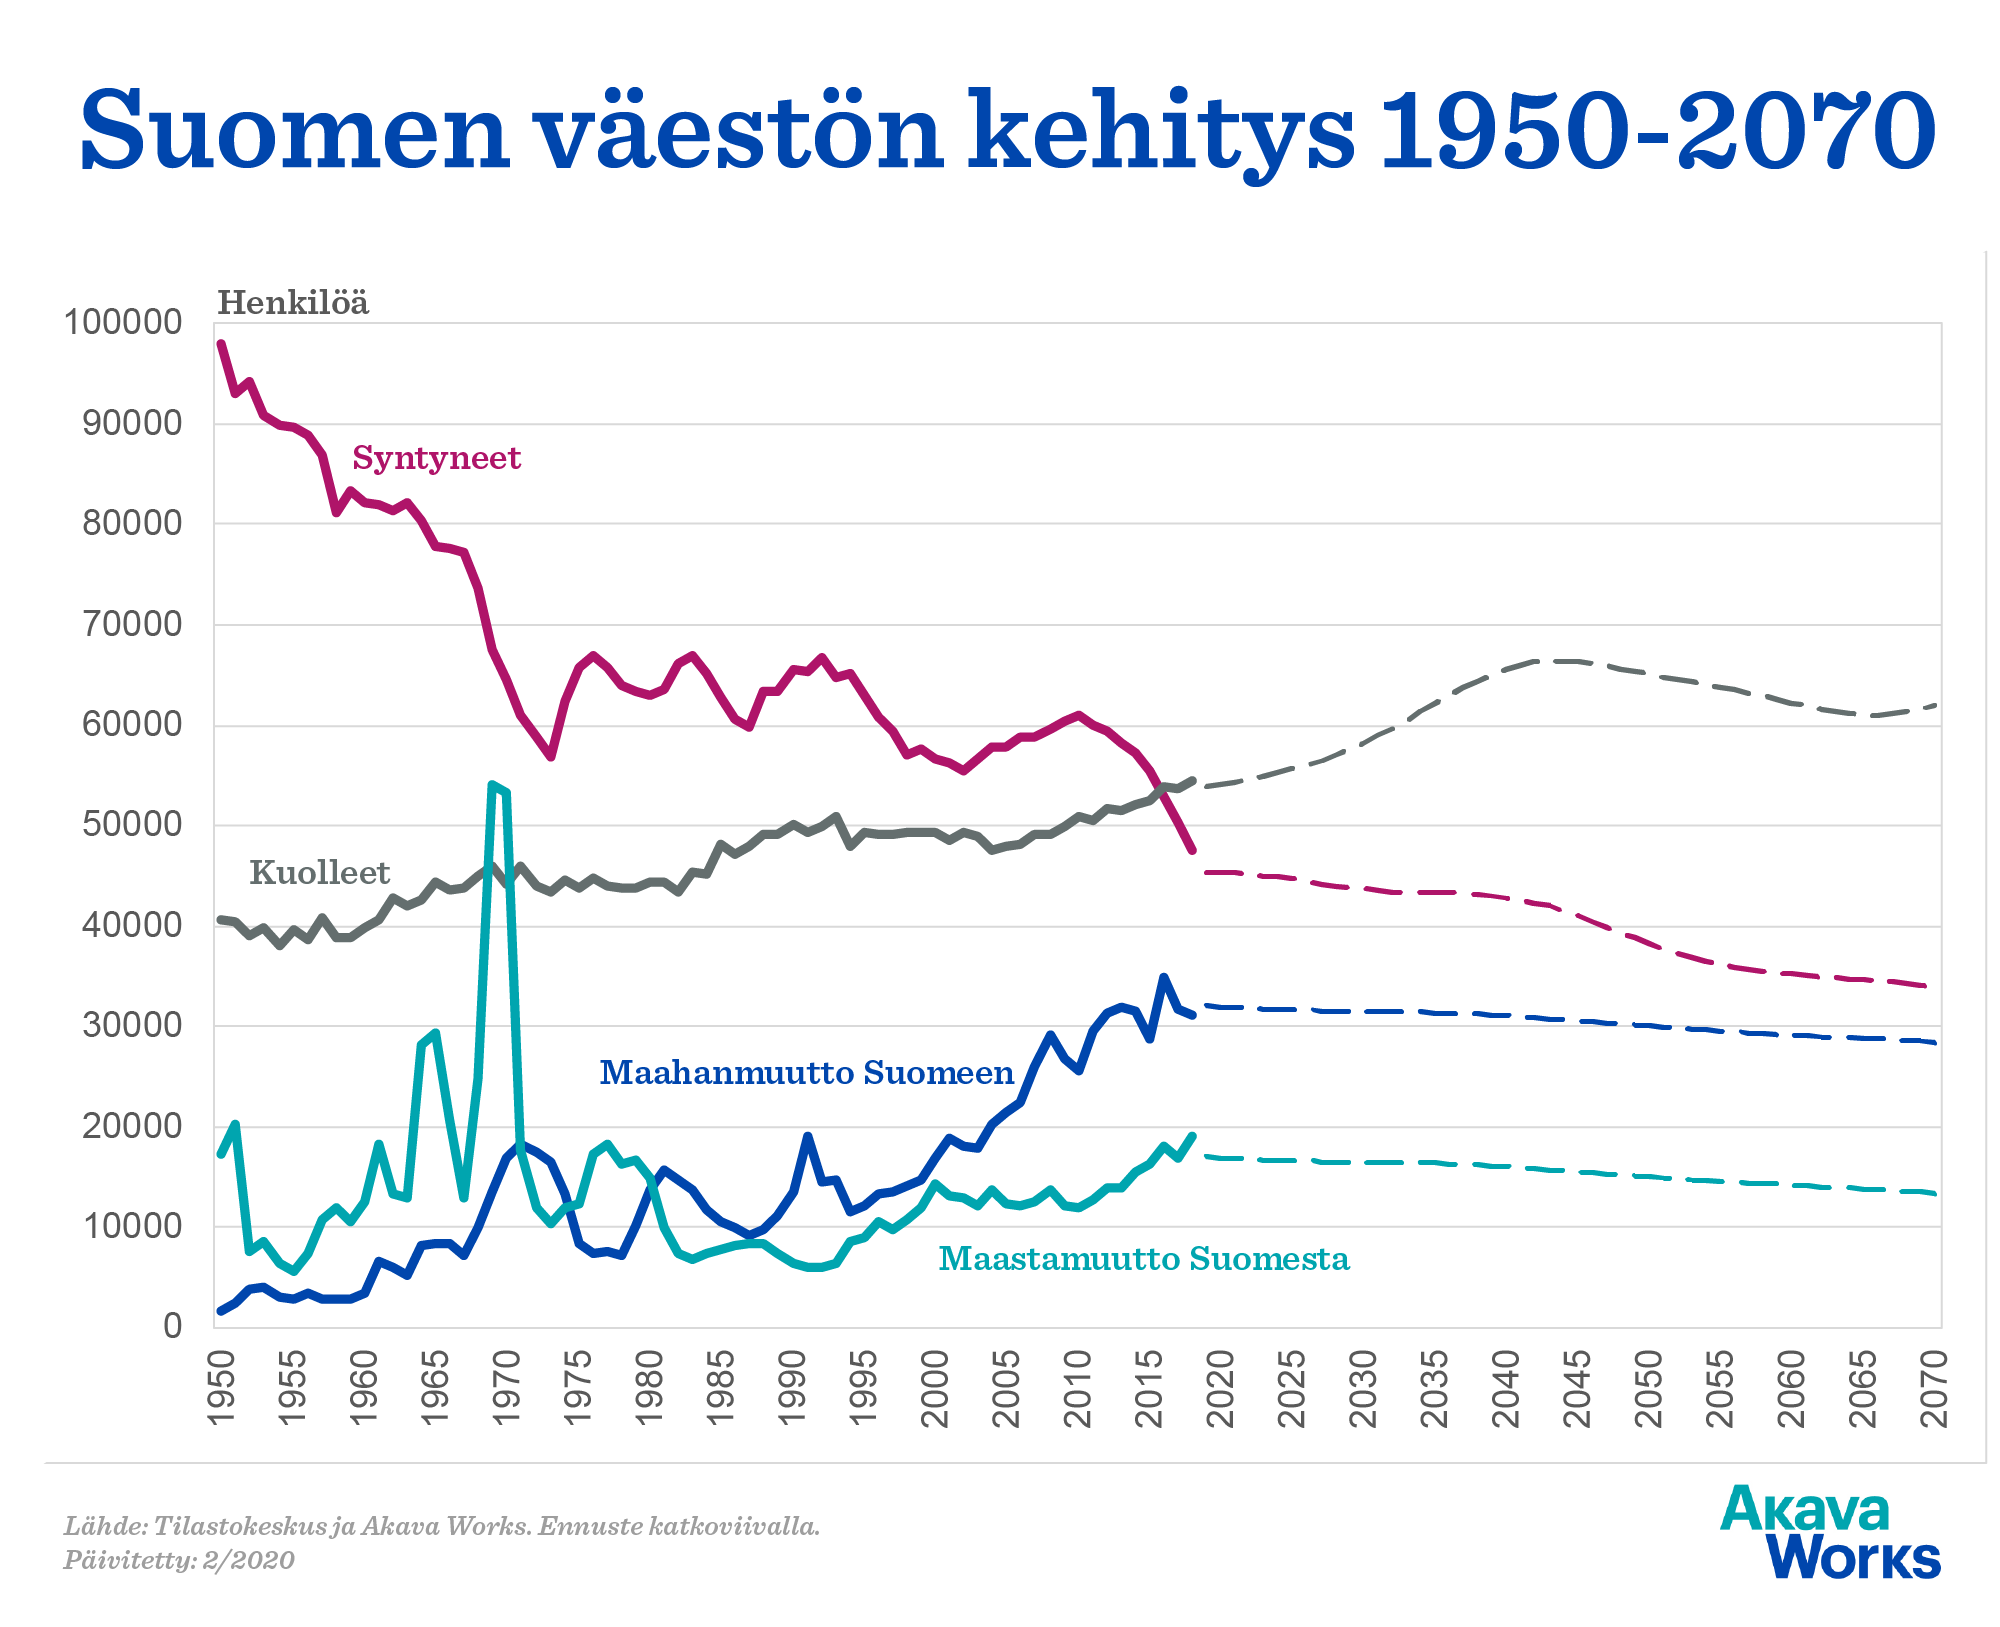 Suomen väestön kehitys 1950-2070. Ennuste katkoviivalla. Lähde: Akava Works ja Tilastokeskus. Päivitetty 2/2020.